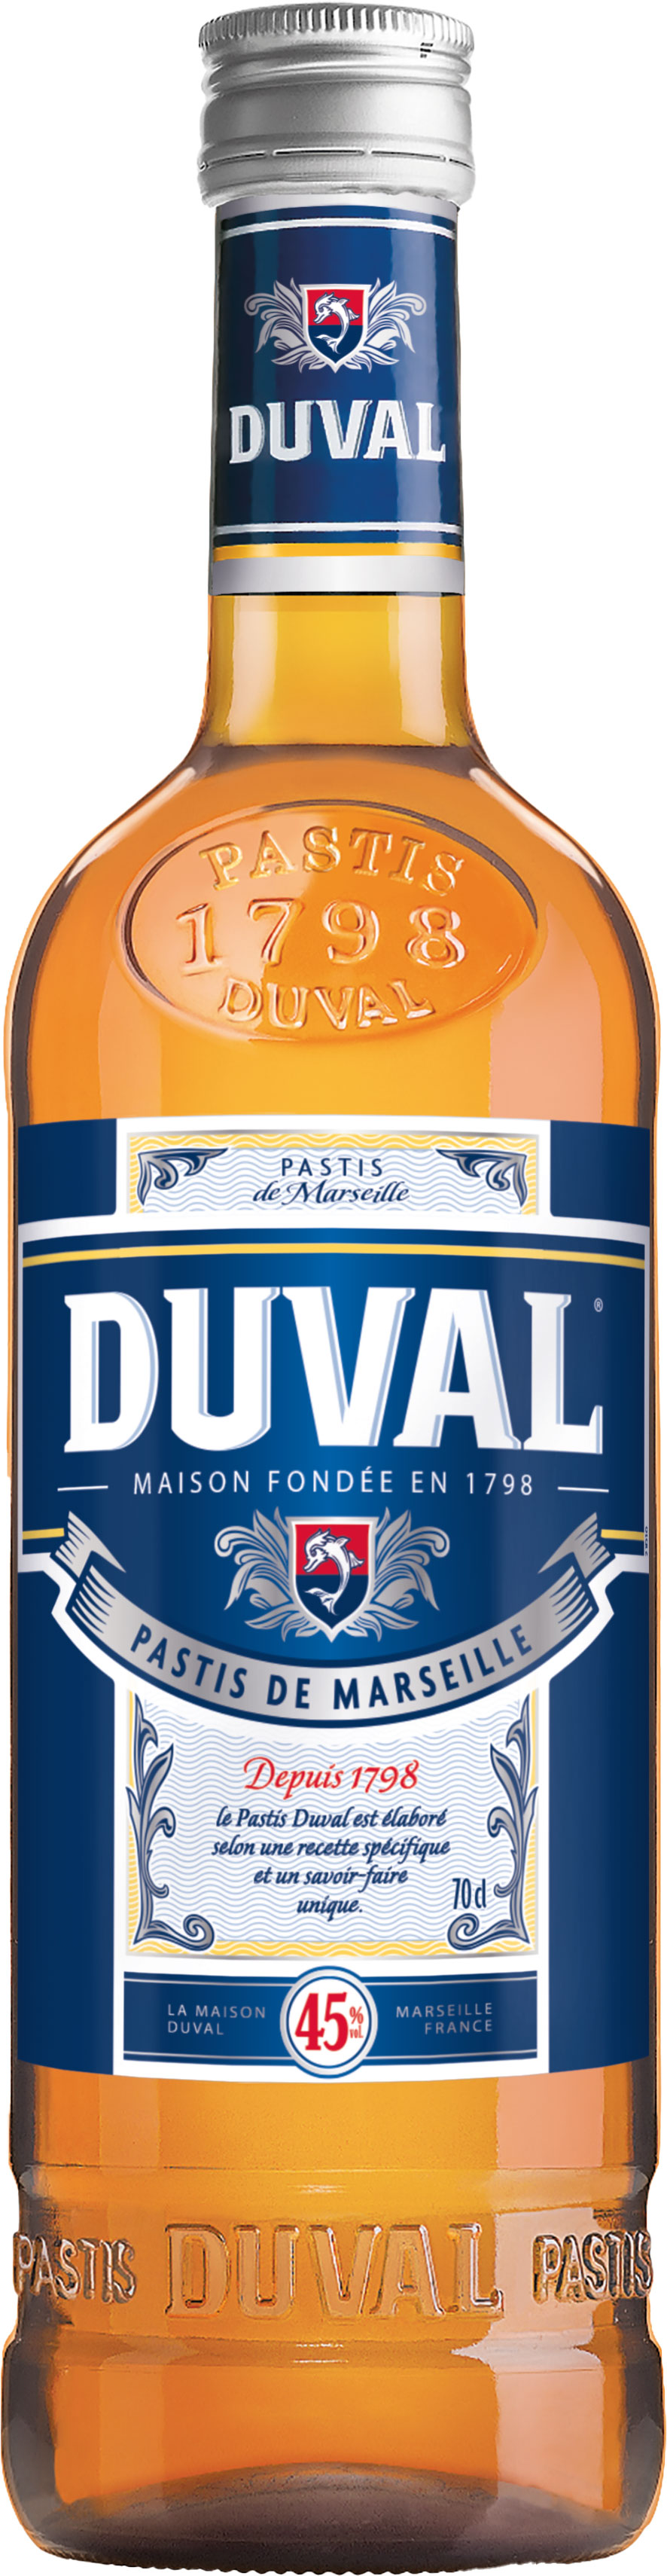 Duval Pastis de Marseille 45% vol. 0,7 l | Schneekloth